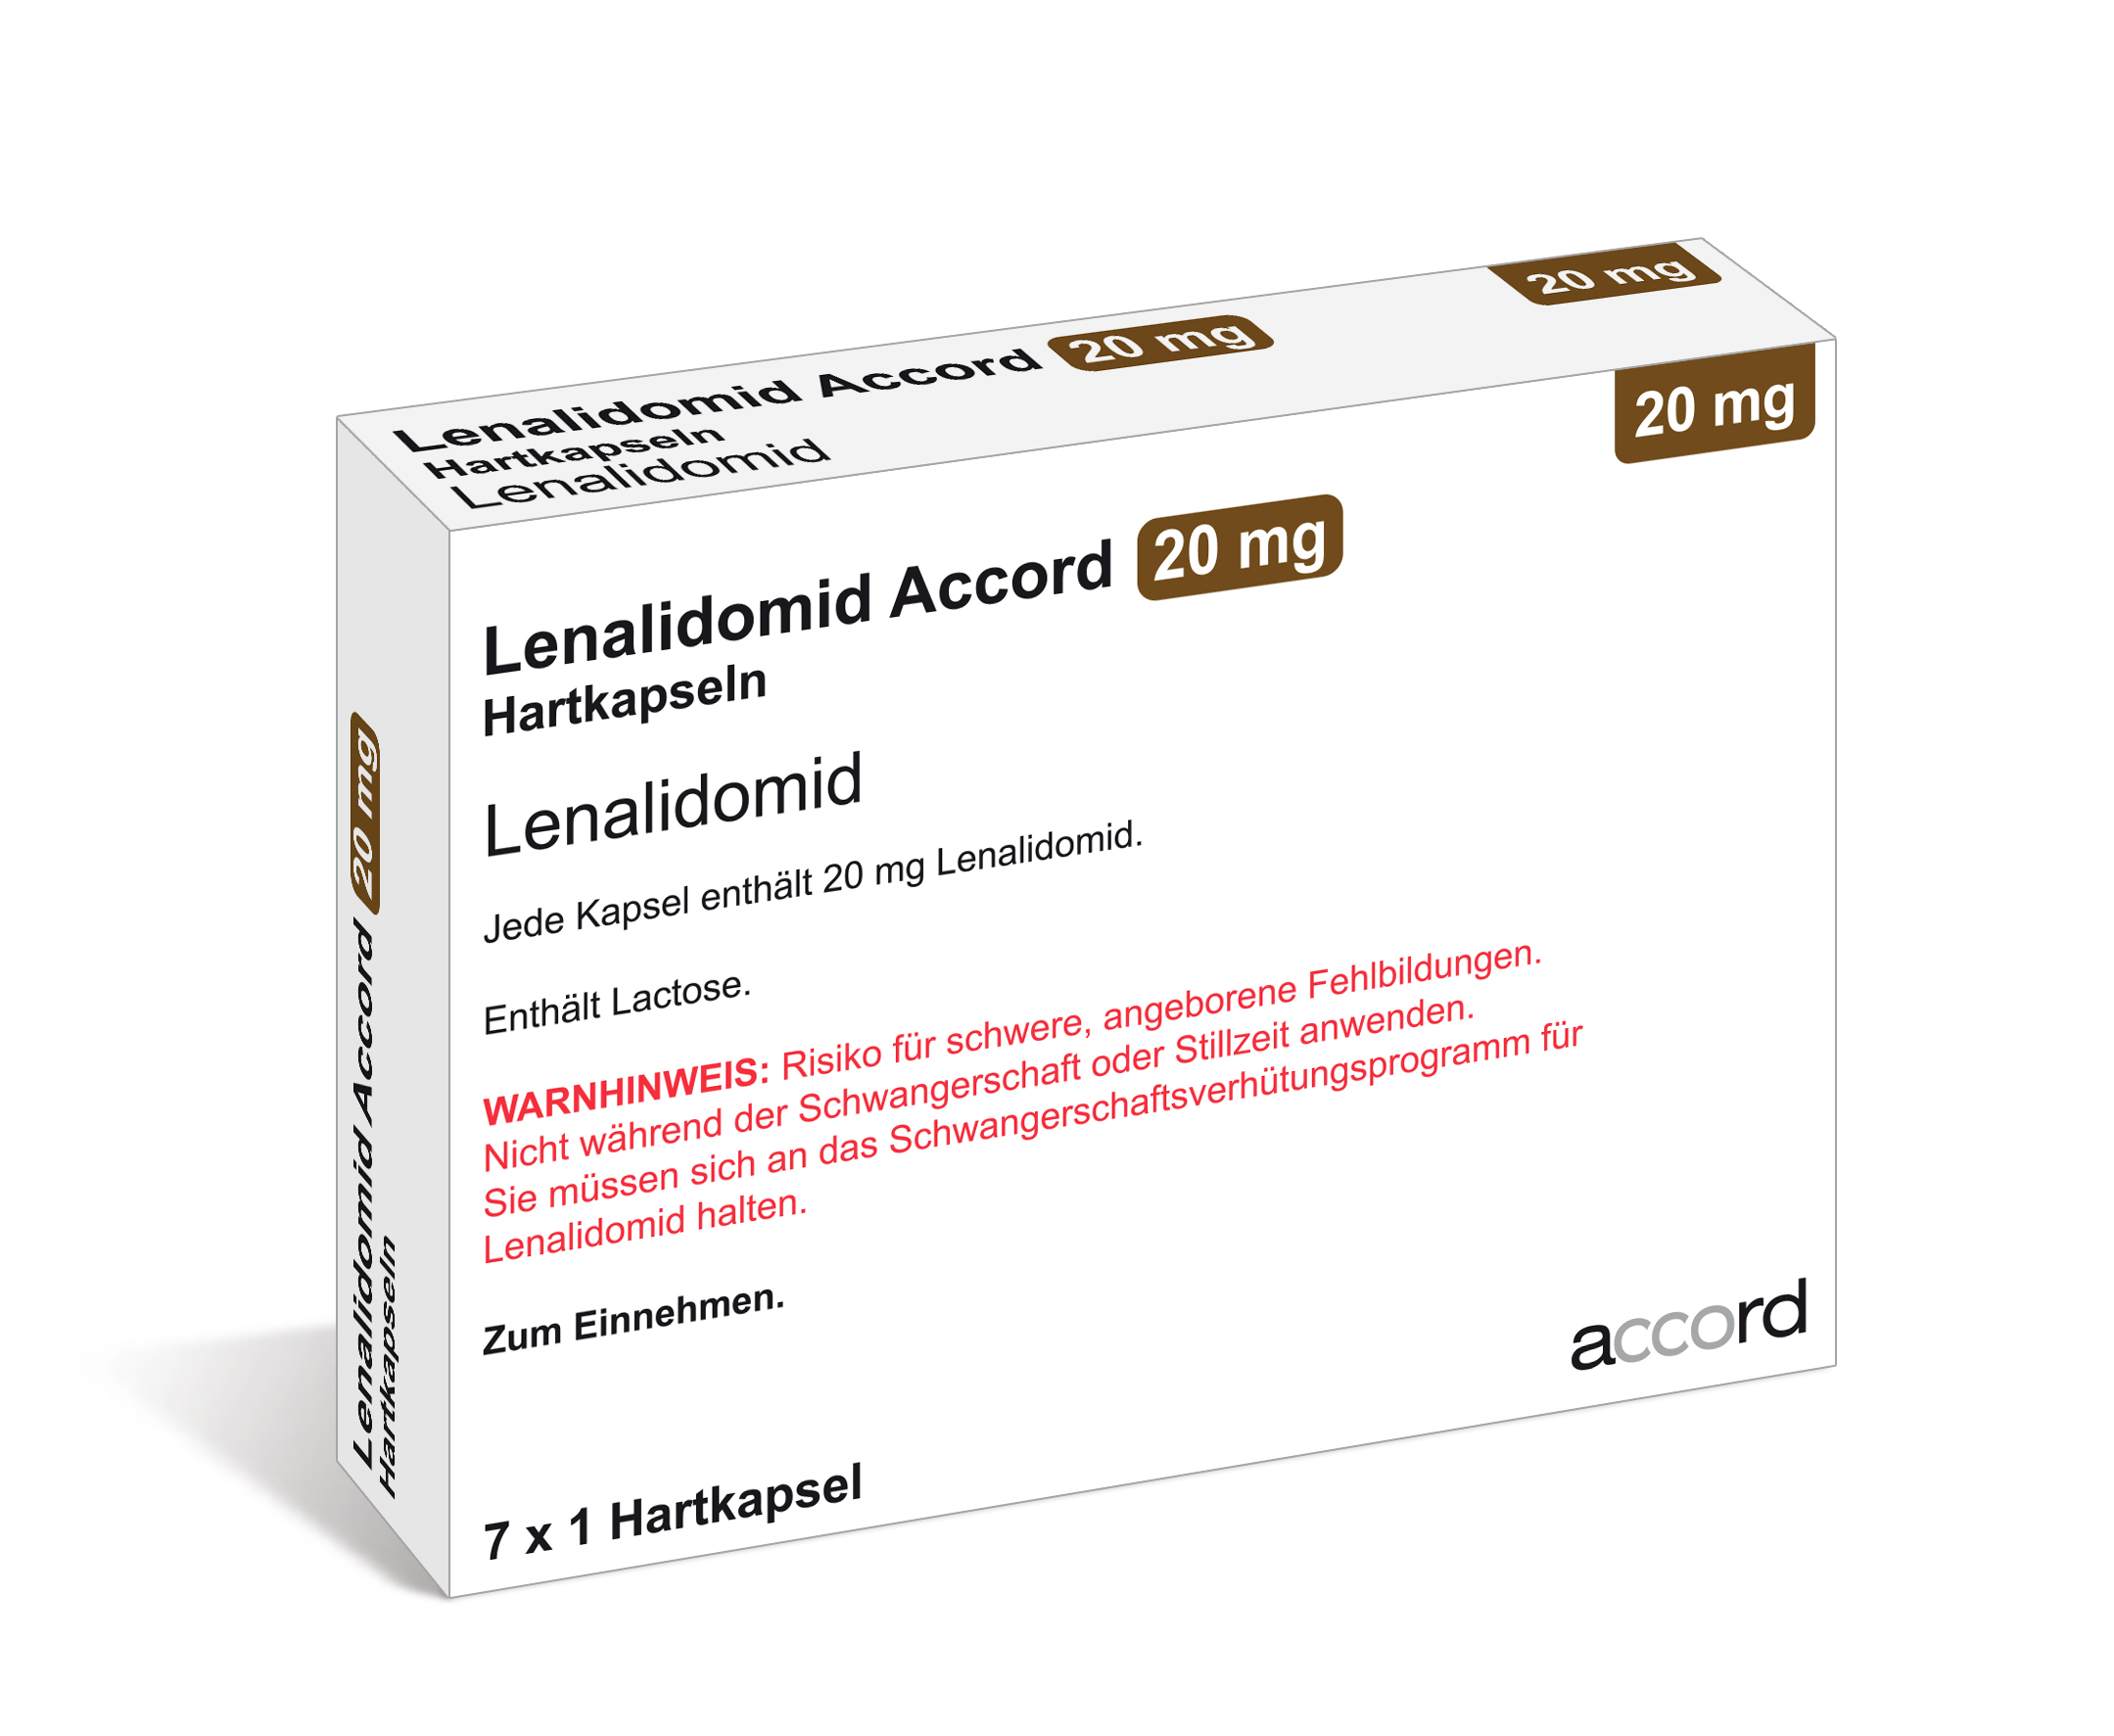 Accord Packshot Lenalidomid 20 mg